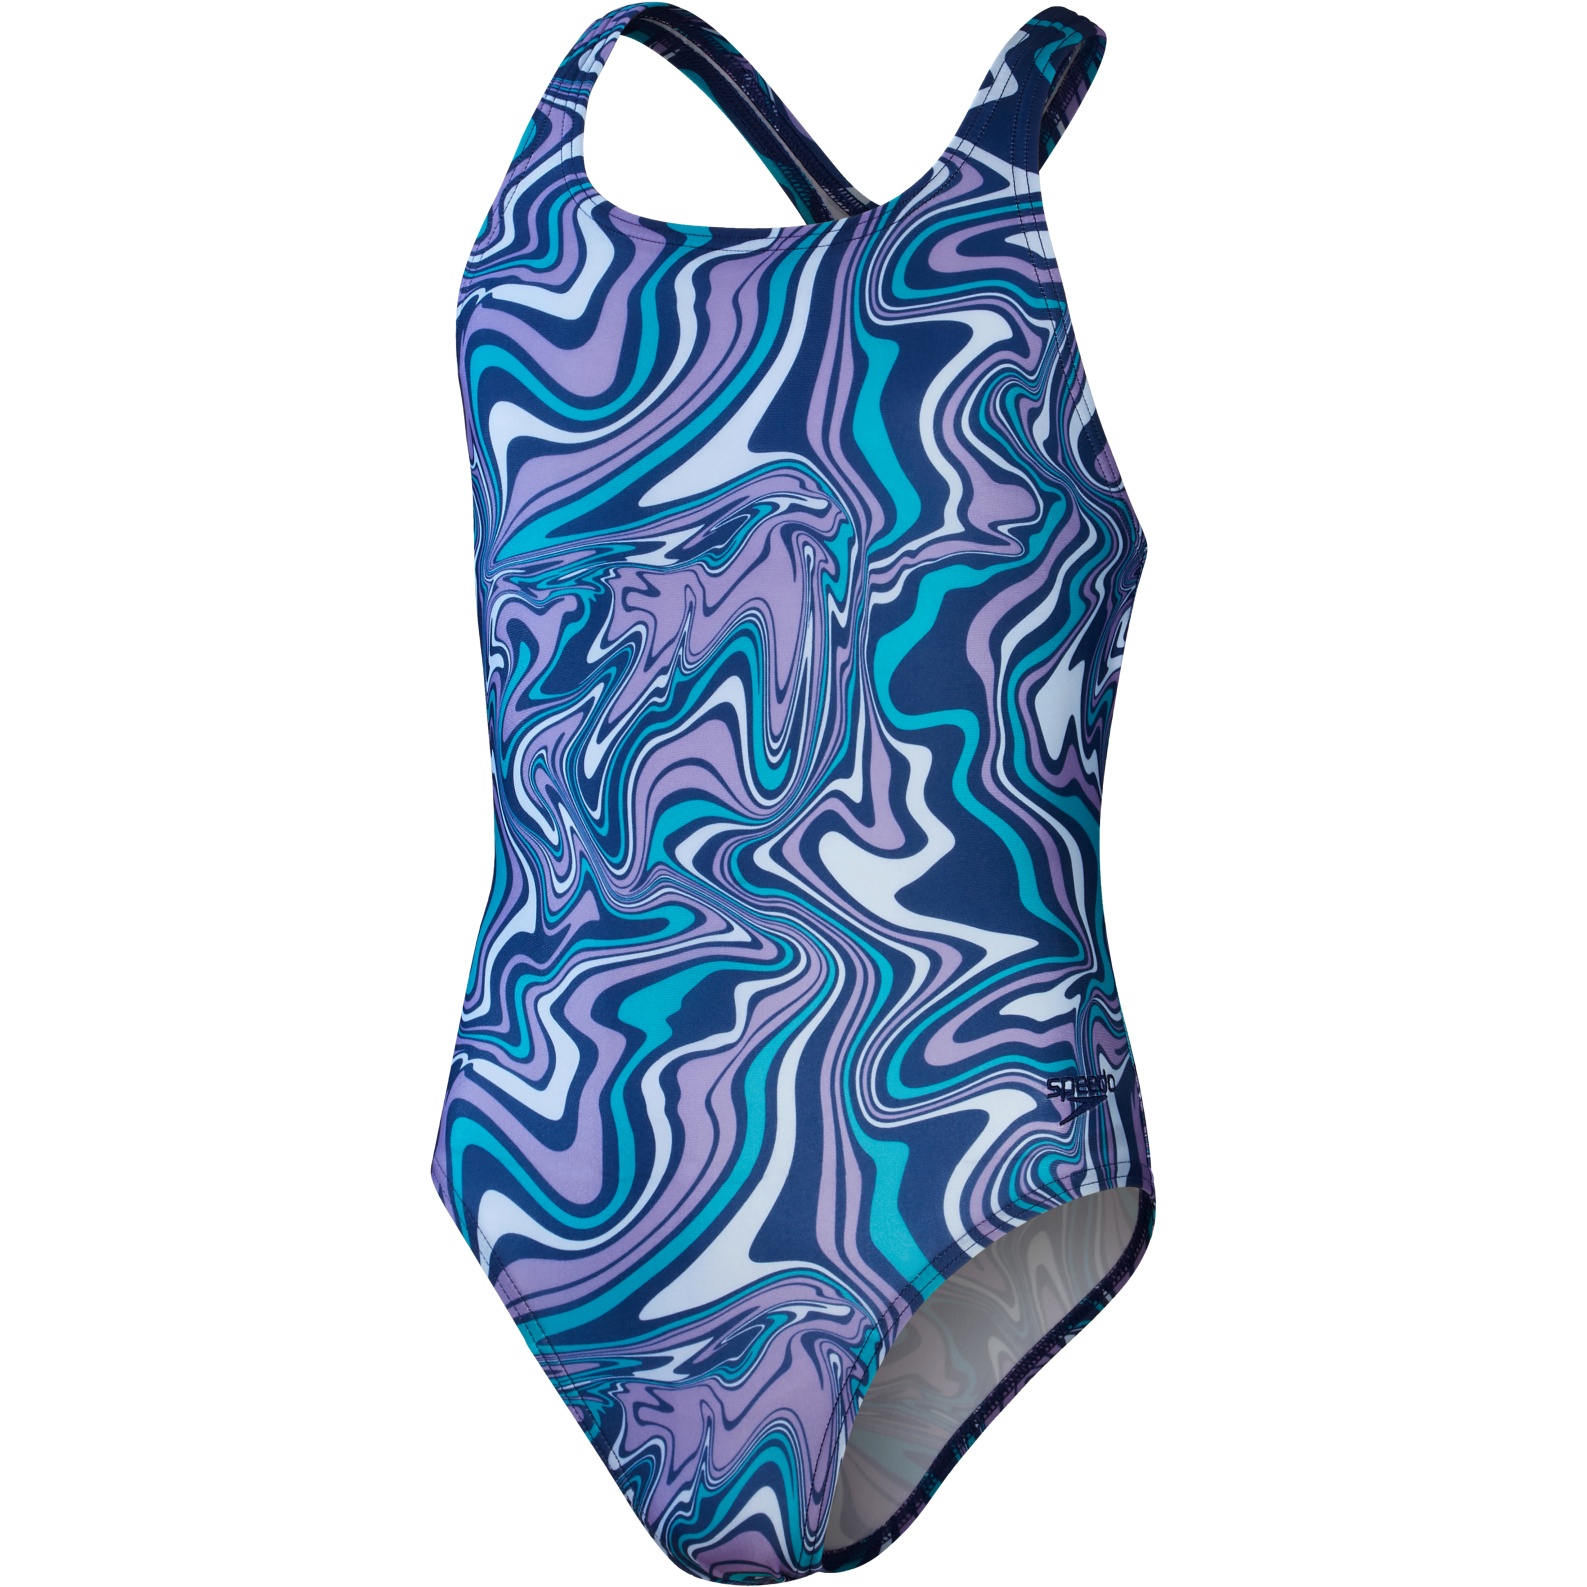 Productfoto van Speedo Allover Medalist Badpak Meisjes - ammonite blue/blue tack/miami lilac/aquarium